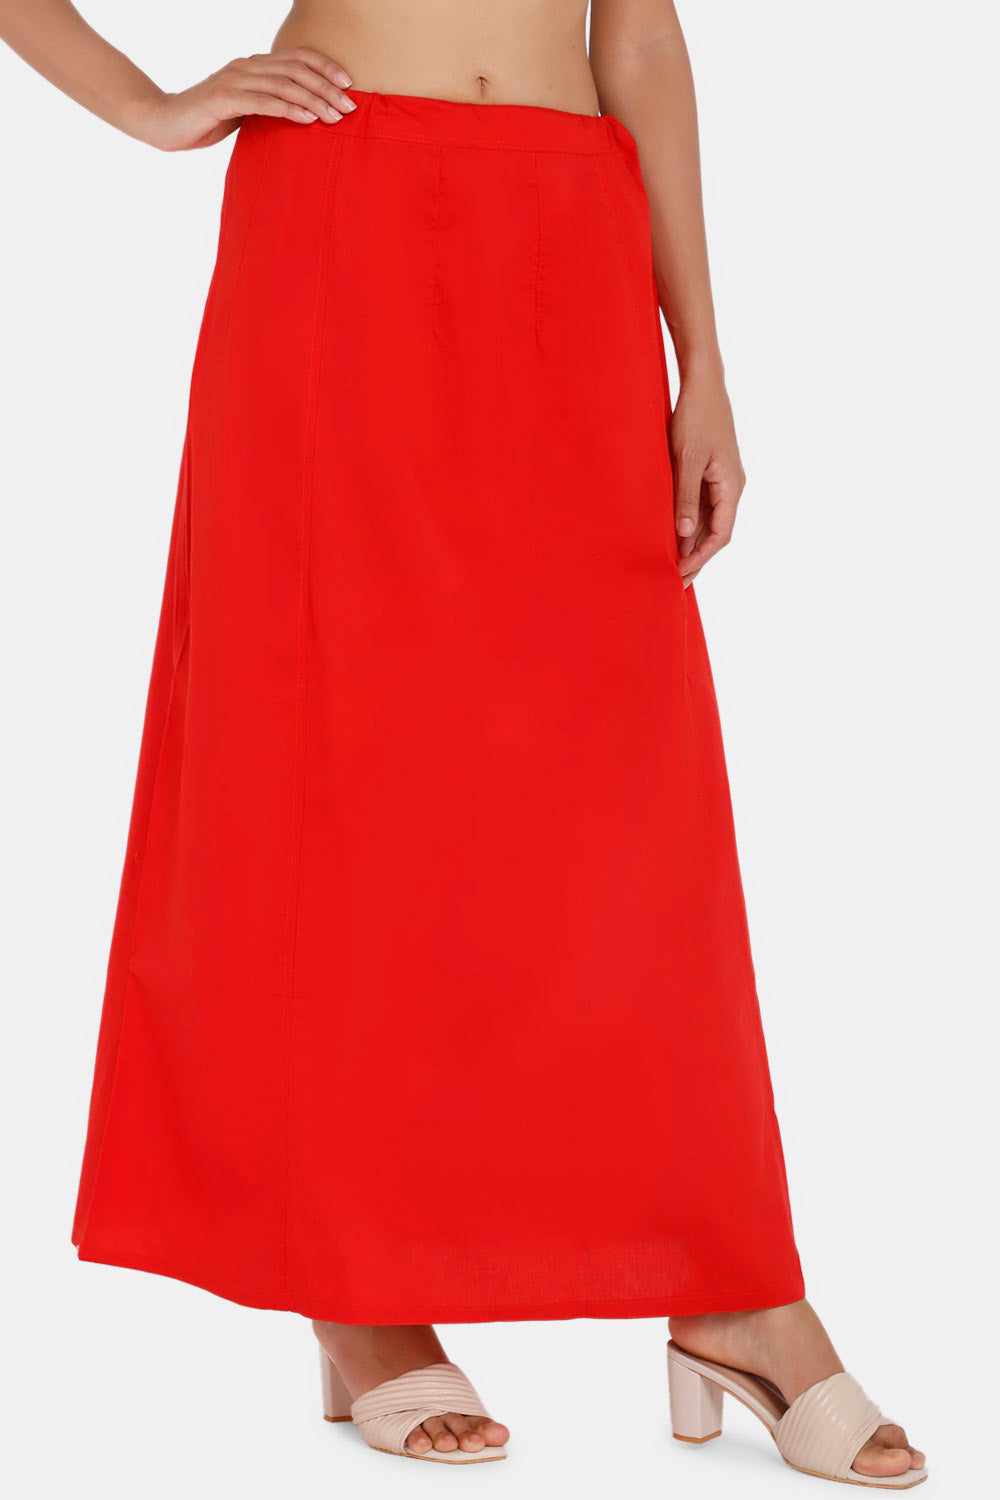 Buy Saree Petticoats Online  Best Saree Skirt to Suit Your Figure